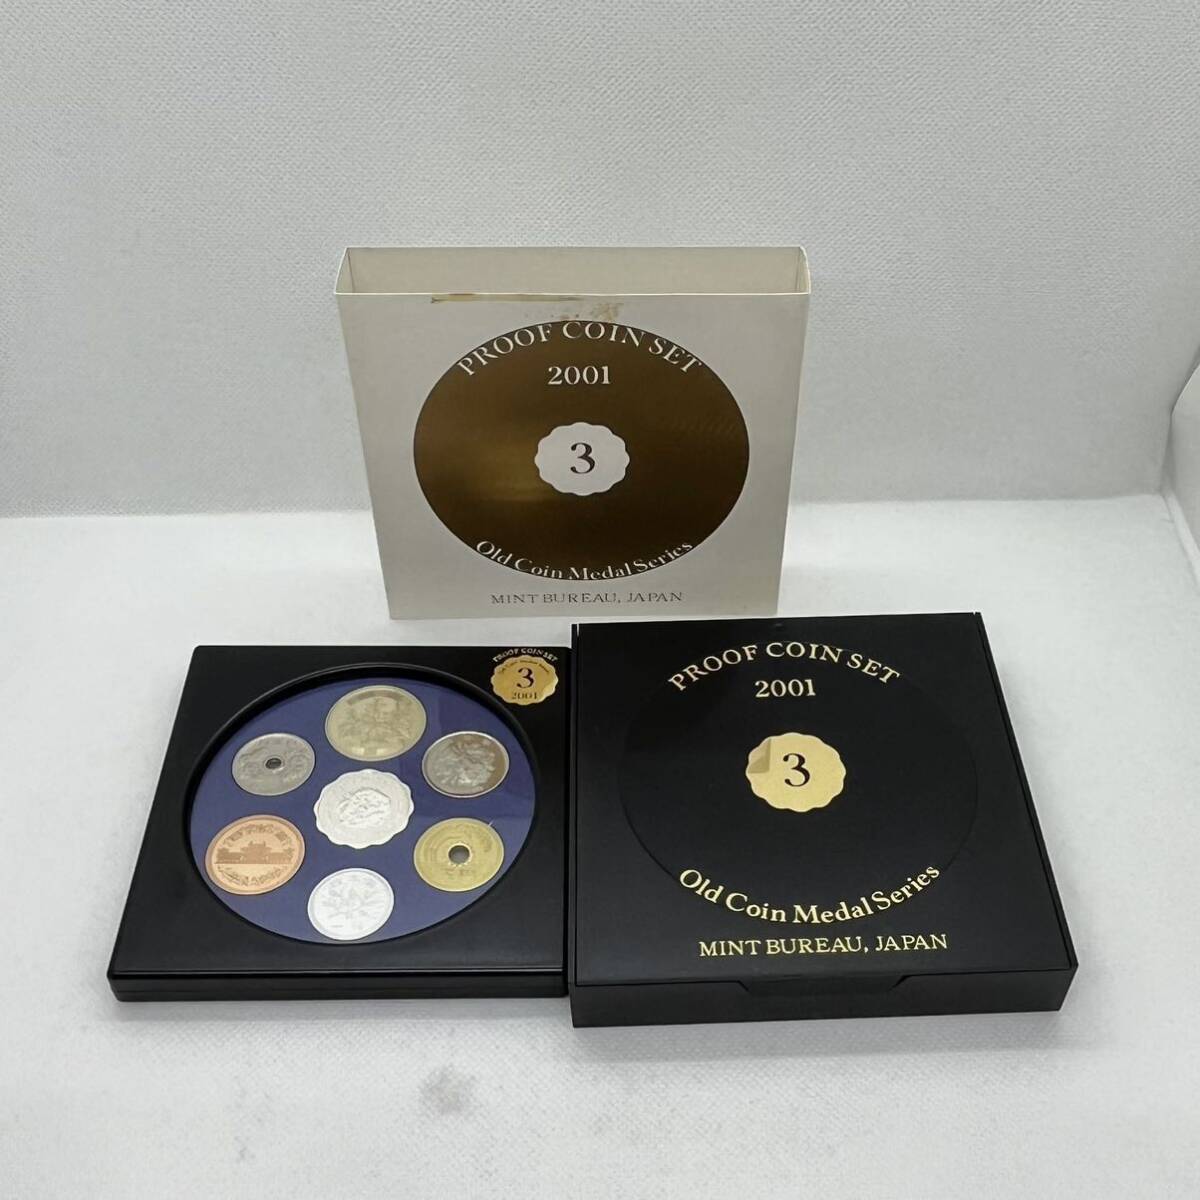 ◆【プルーフ貨幣セット】オールドコイン メダルシリーズ PROOF COIN SET Old Coin Medal Series 2001 平成13年 純銀メダル入り 造幣局の画像1